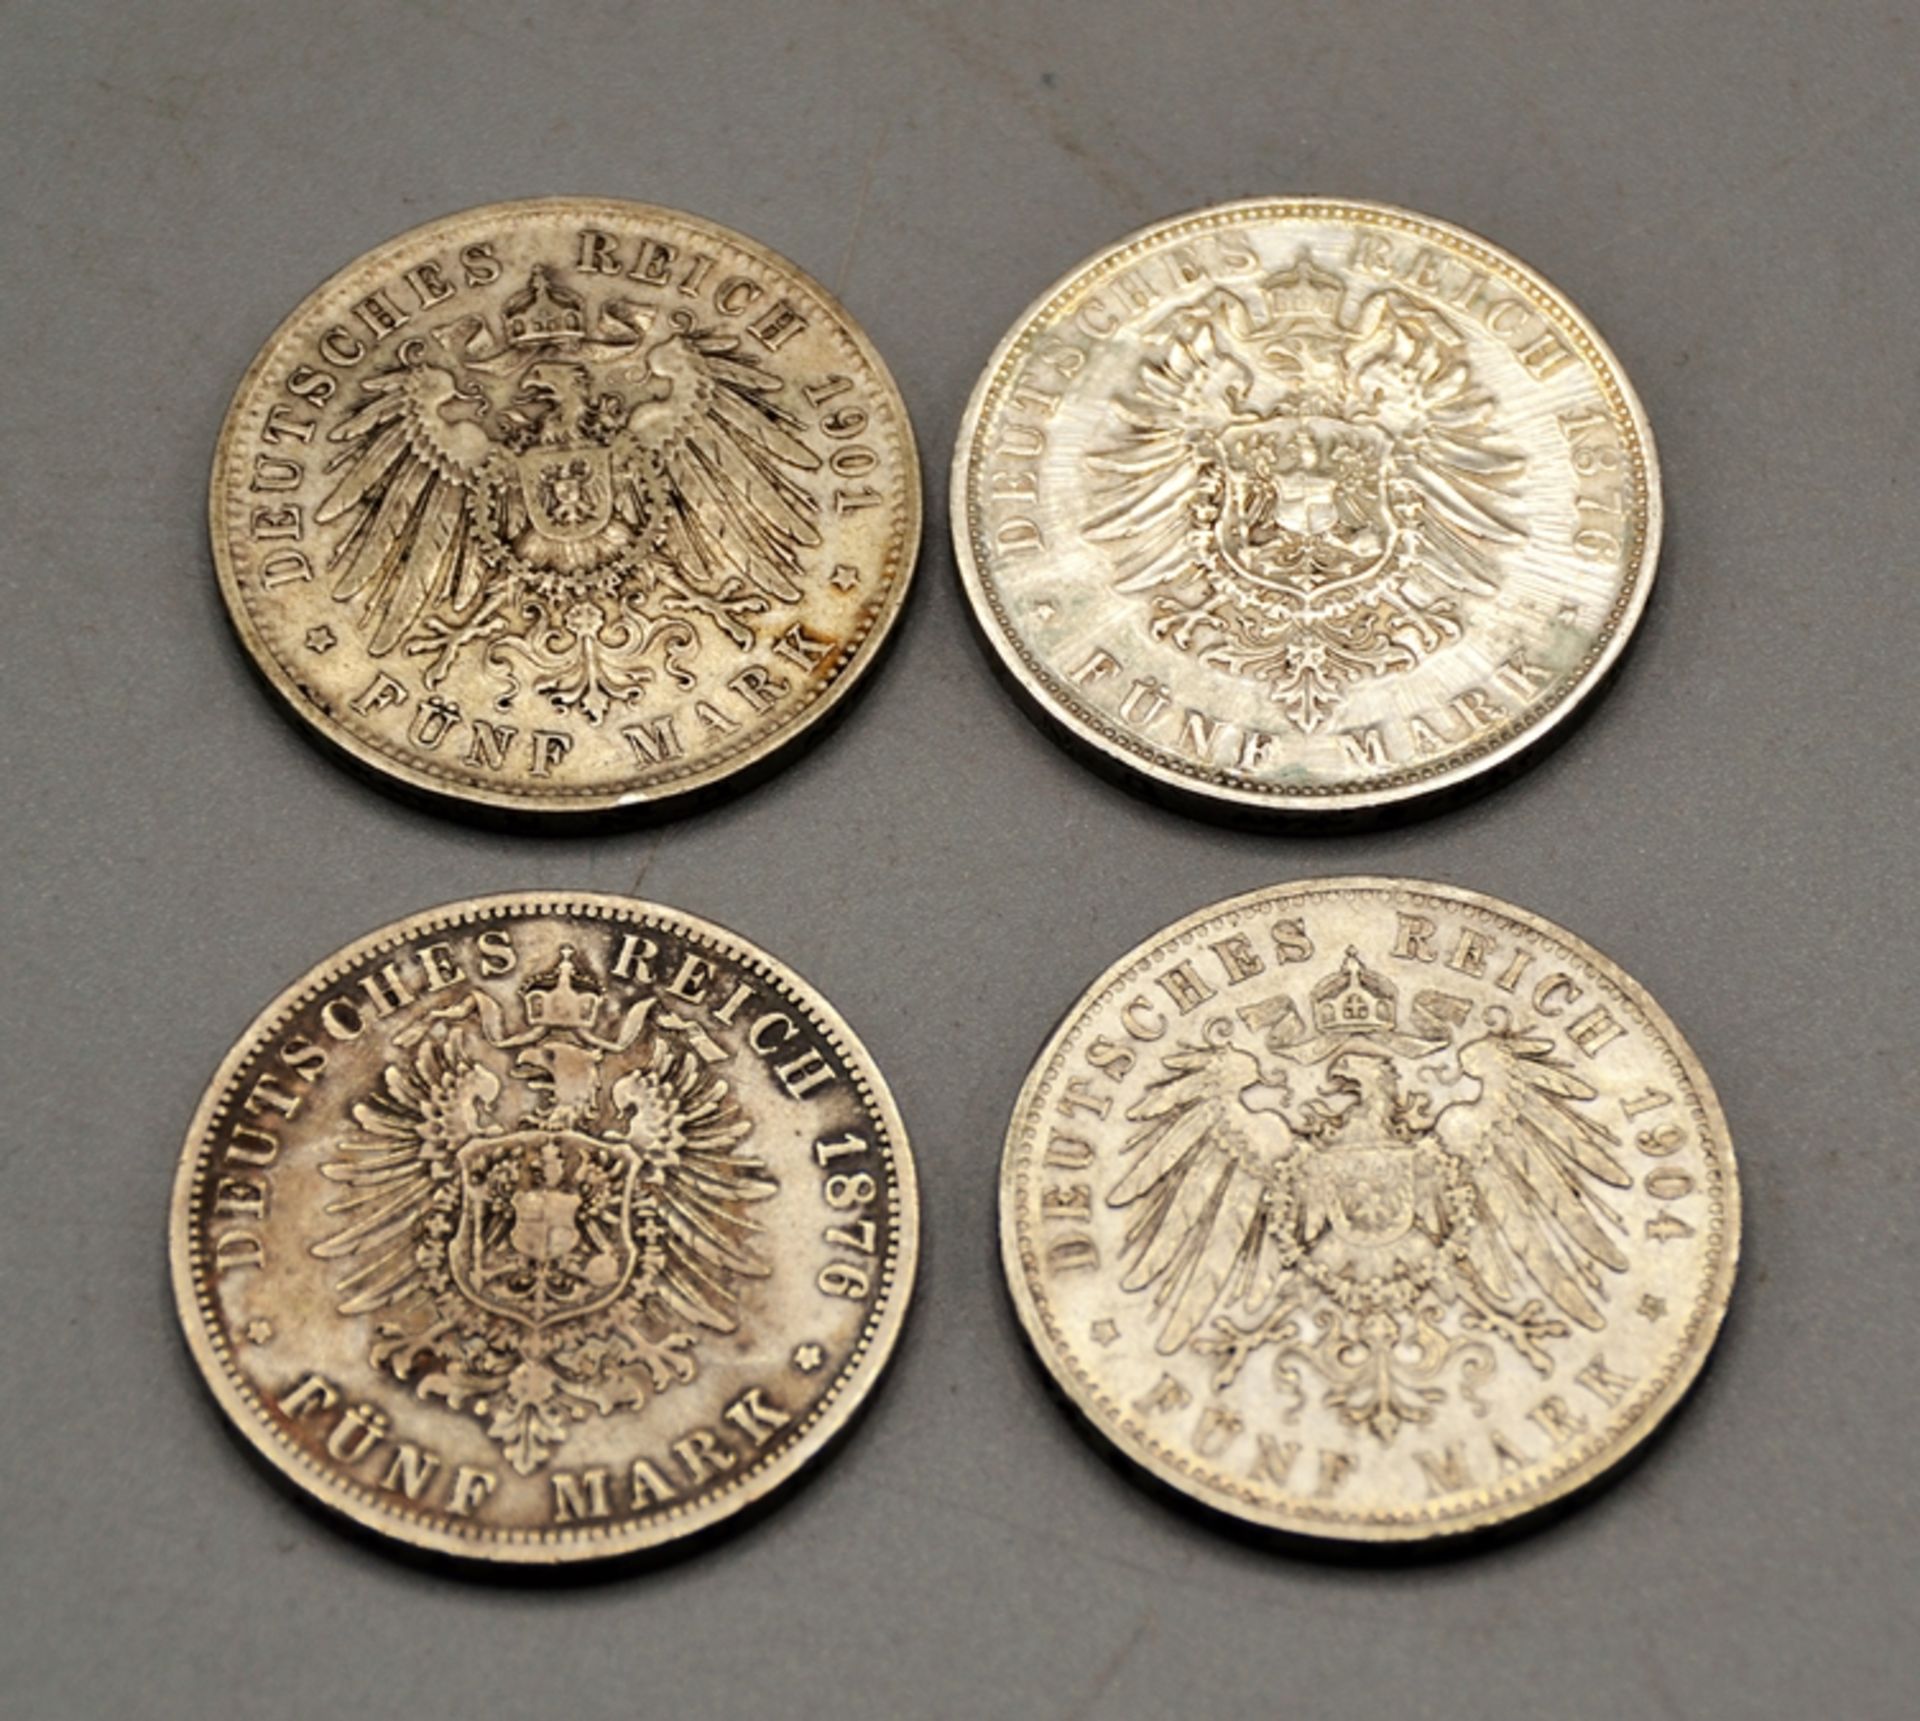 Konvolut 4 x 5 Mark Deutsches Reich, darunter 5 Mark 1901 D Otto Bayern, 5 Mark 1876 B Wilhelm I Pr - Bild 2 aus 2